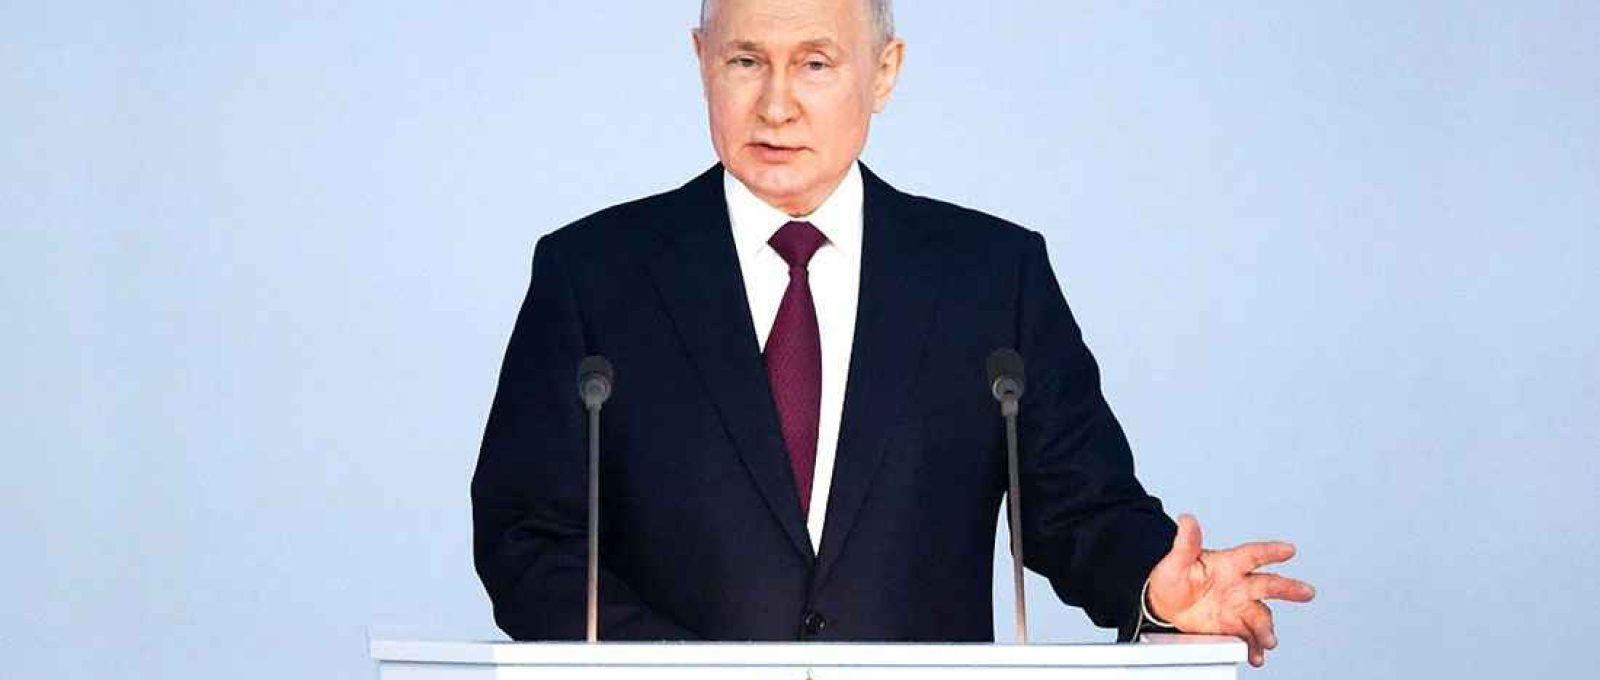 O presidente russo, Vladimir Putin, durante seu discurso à Assembleia Federal (Sergei Karpukhin/TASS).